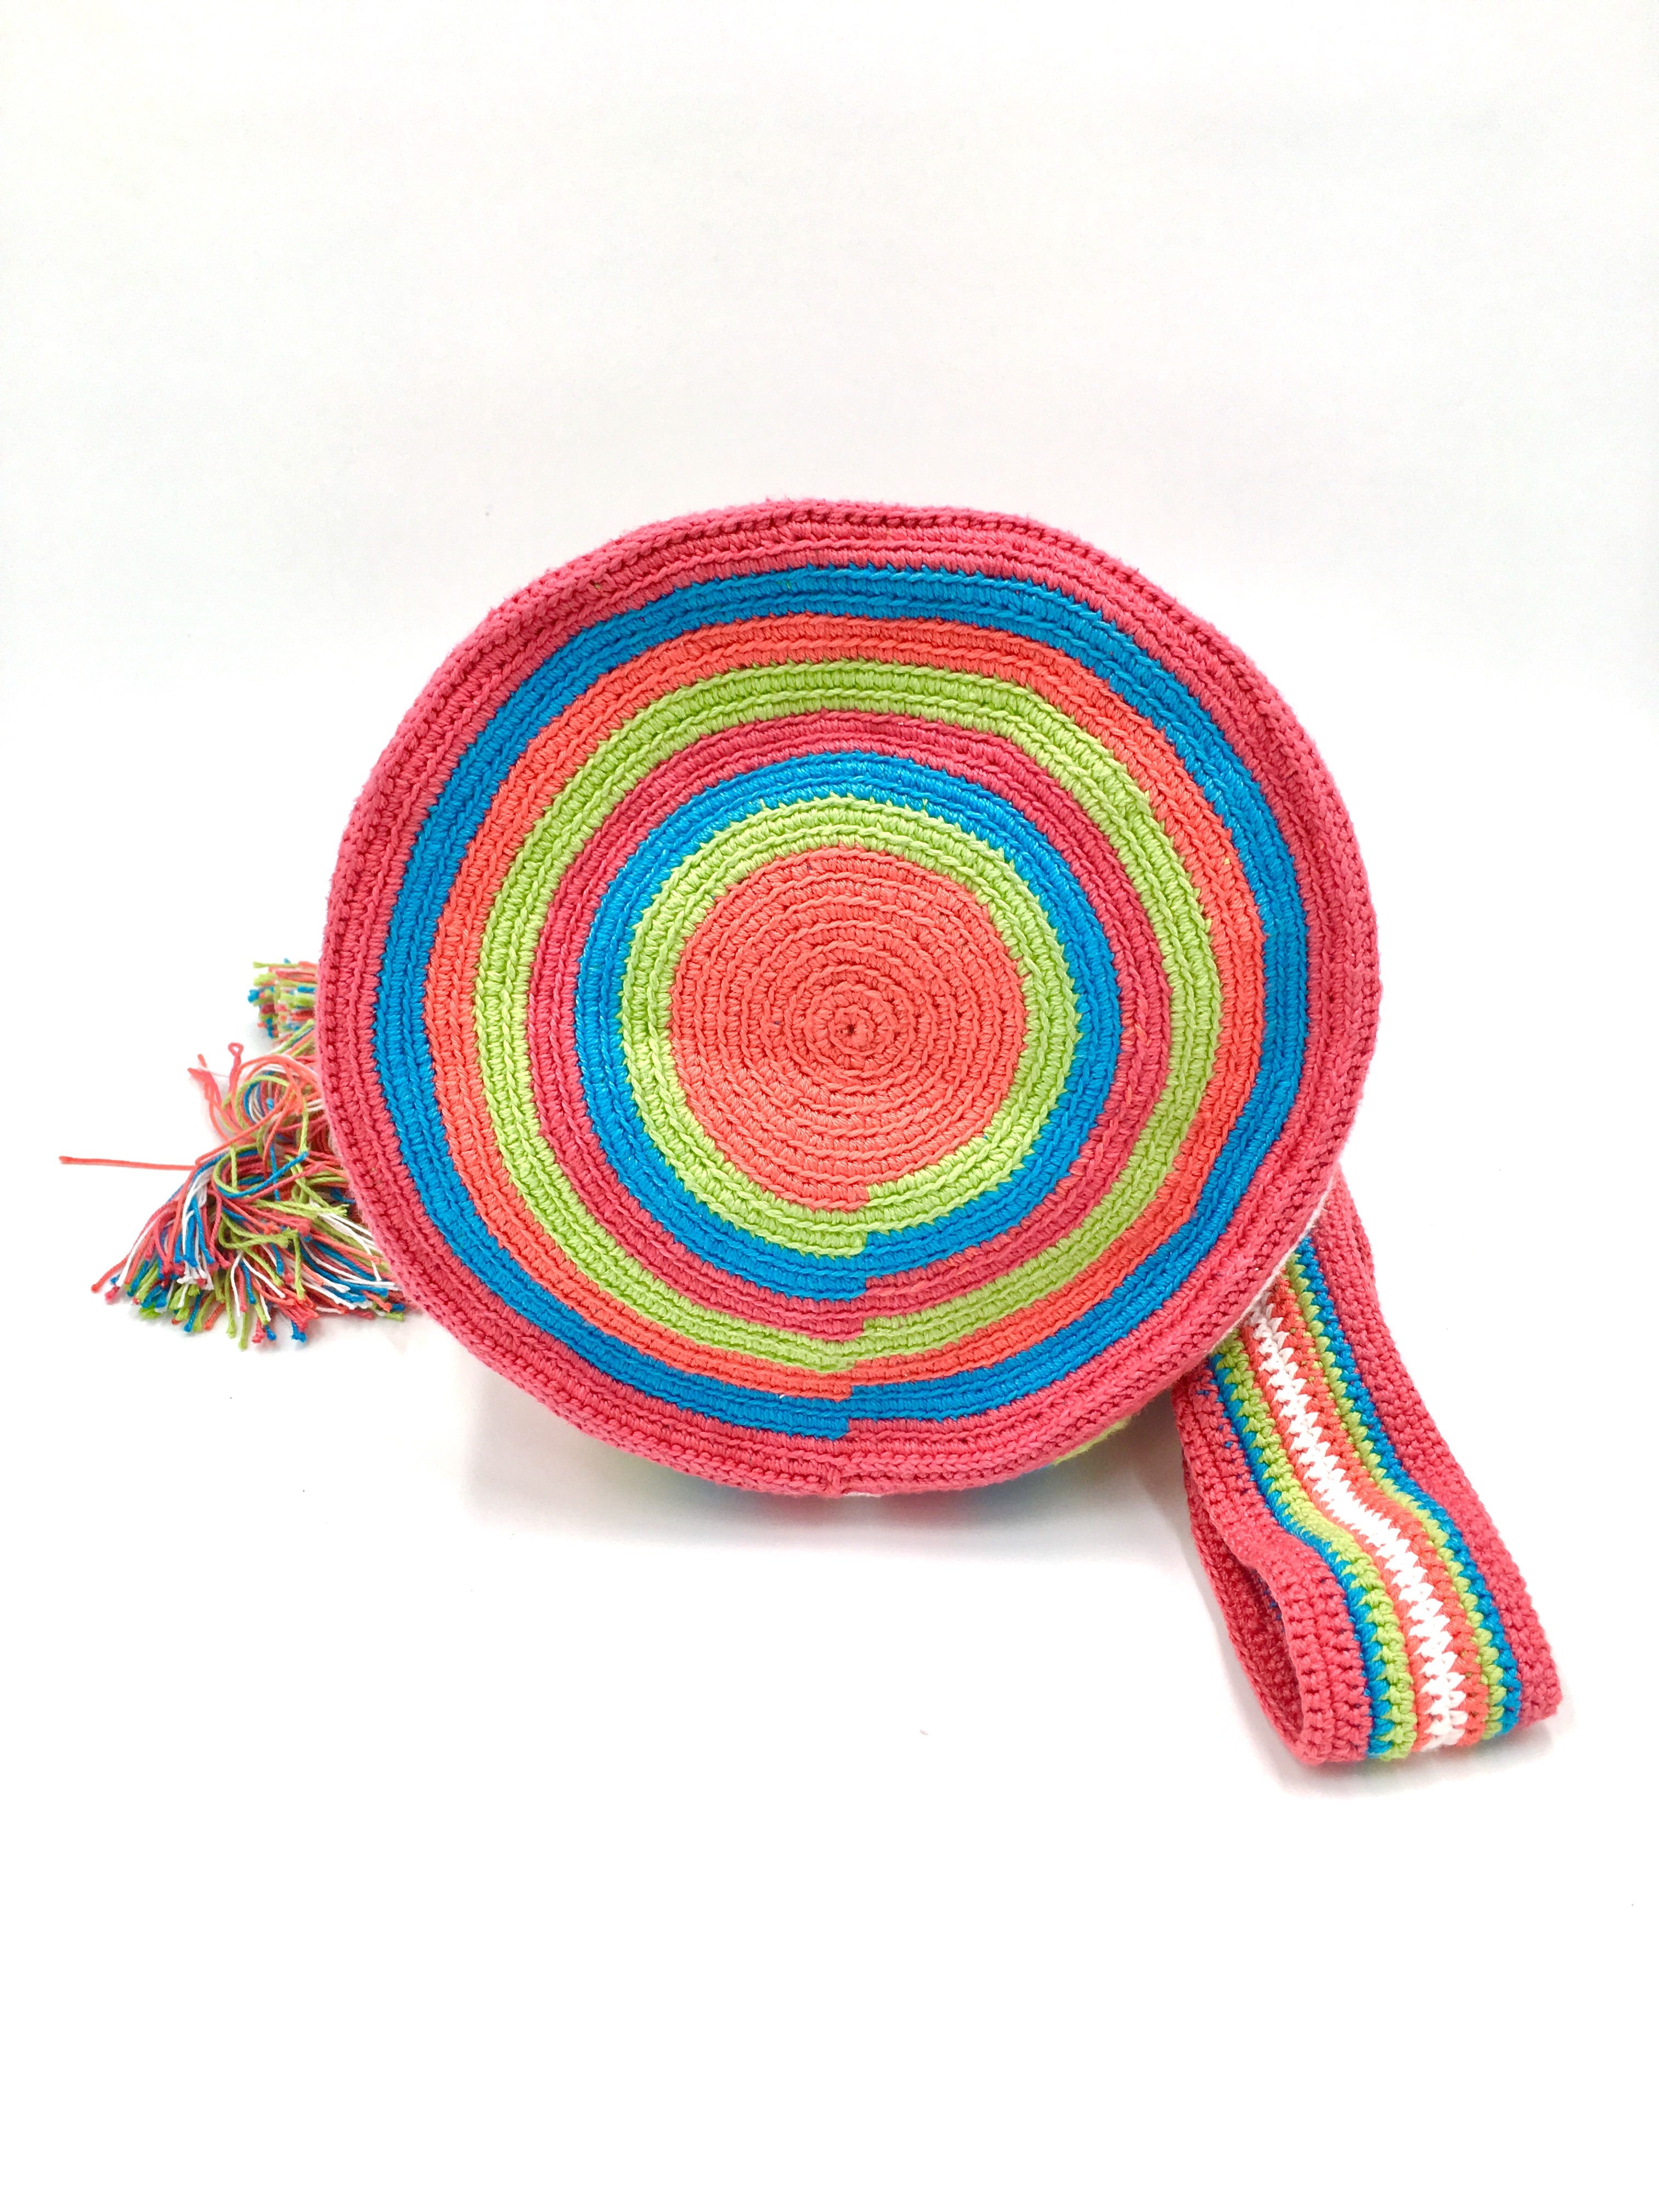 Pompom bag, wayuu pattern.